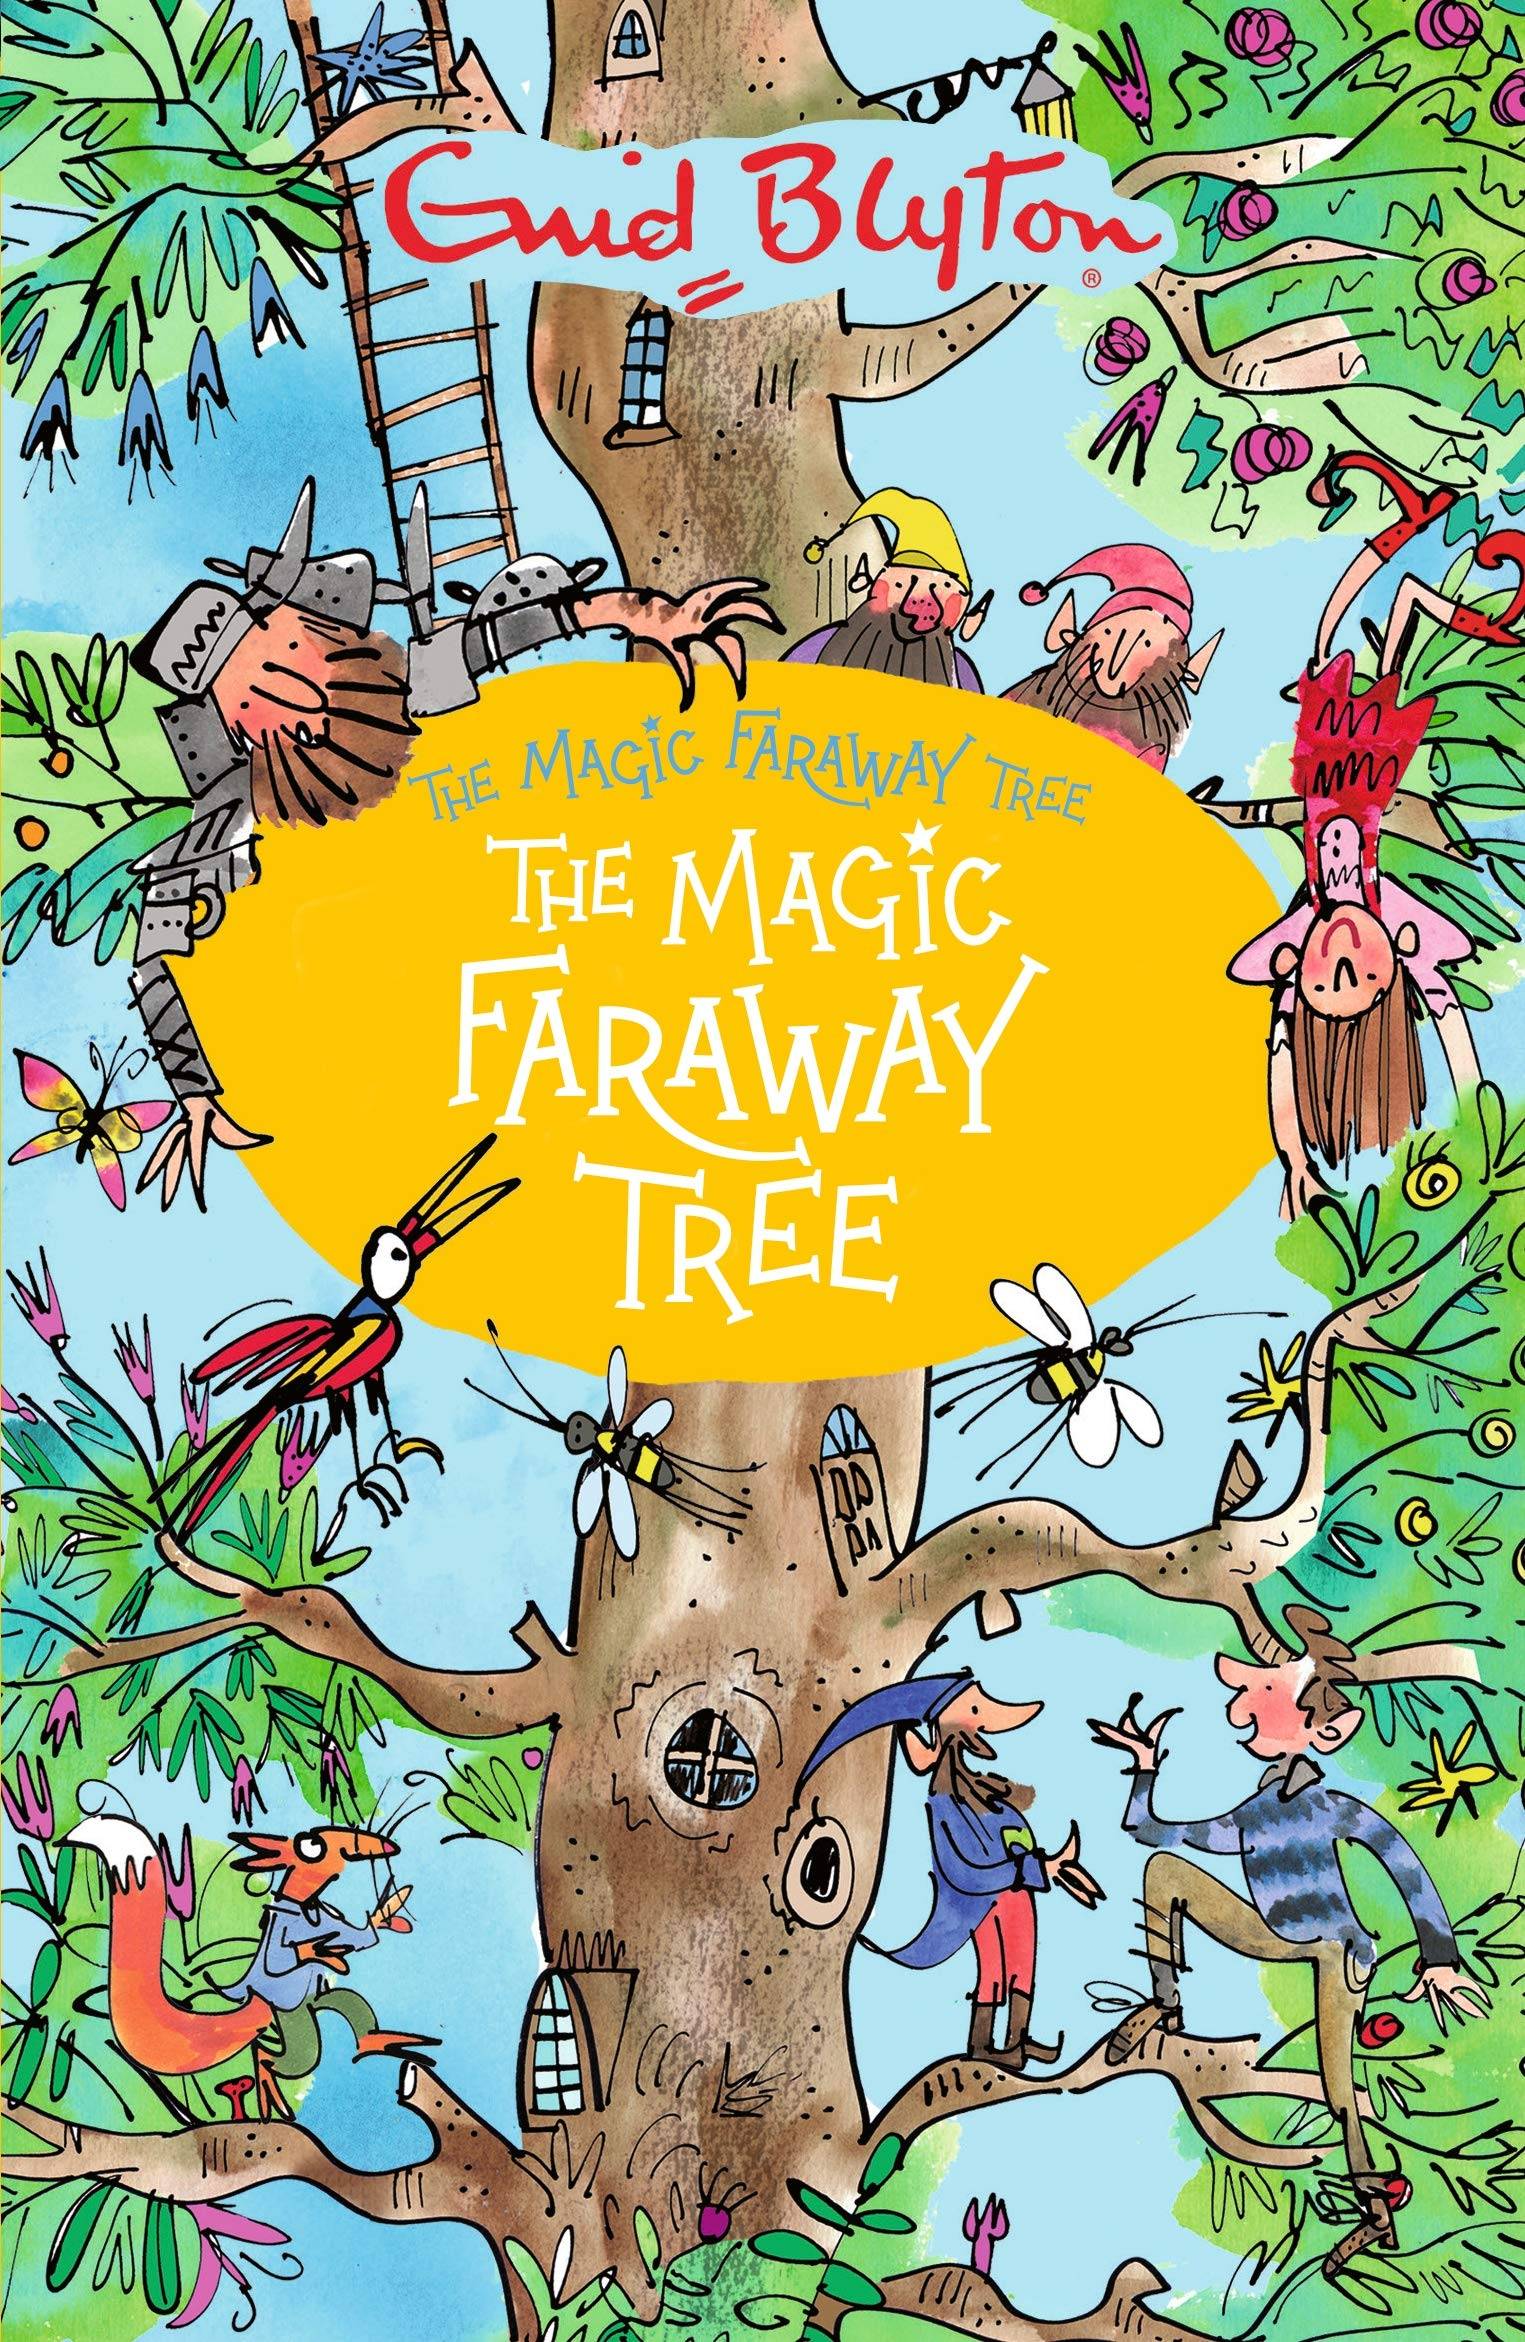 IMG : The Magic Faraway Tree